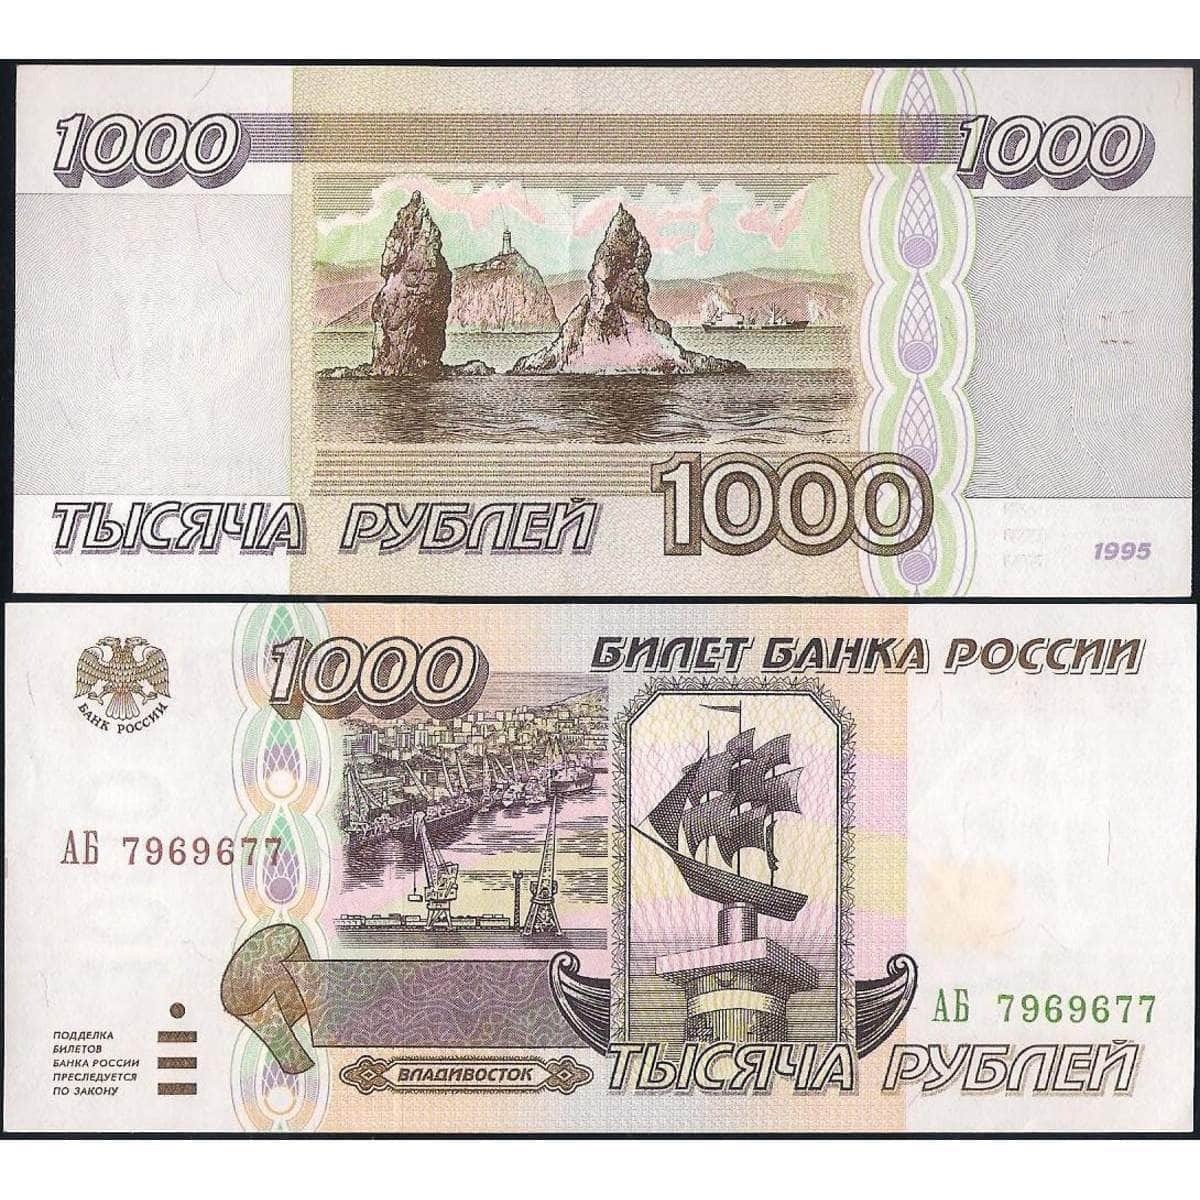 1 000 000 рублей купюра. Тысяча рублей 1995 года. 1000 Рублей 1995 года бумажные. 1000 Купюра 1995 года. Деньги 1000 рублей 1995 года.